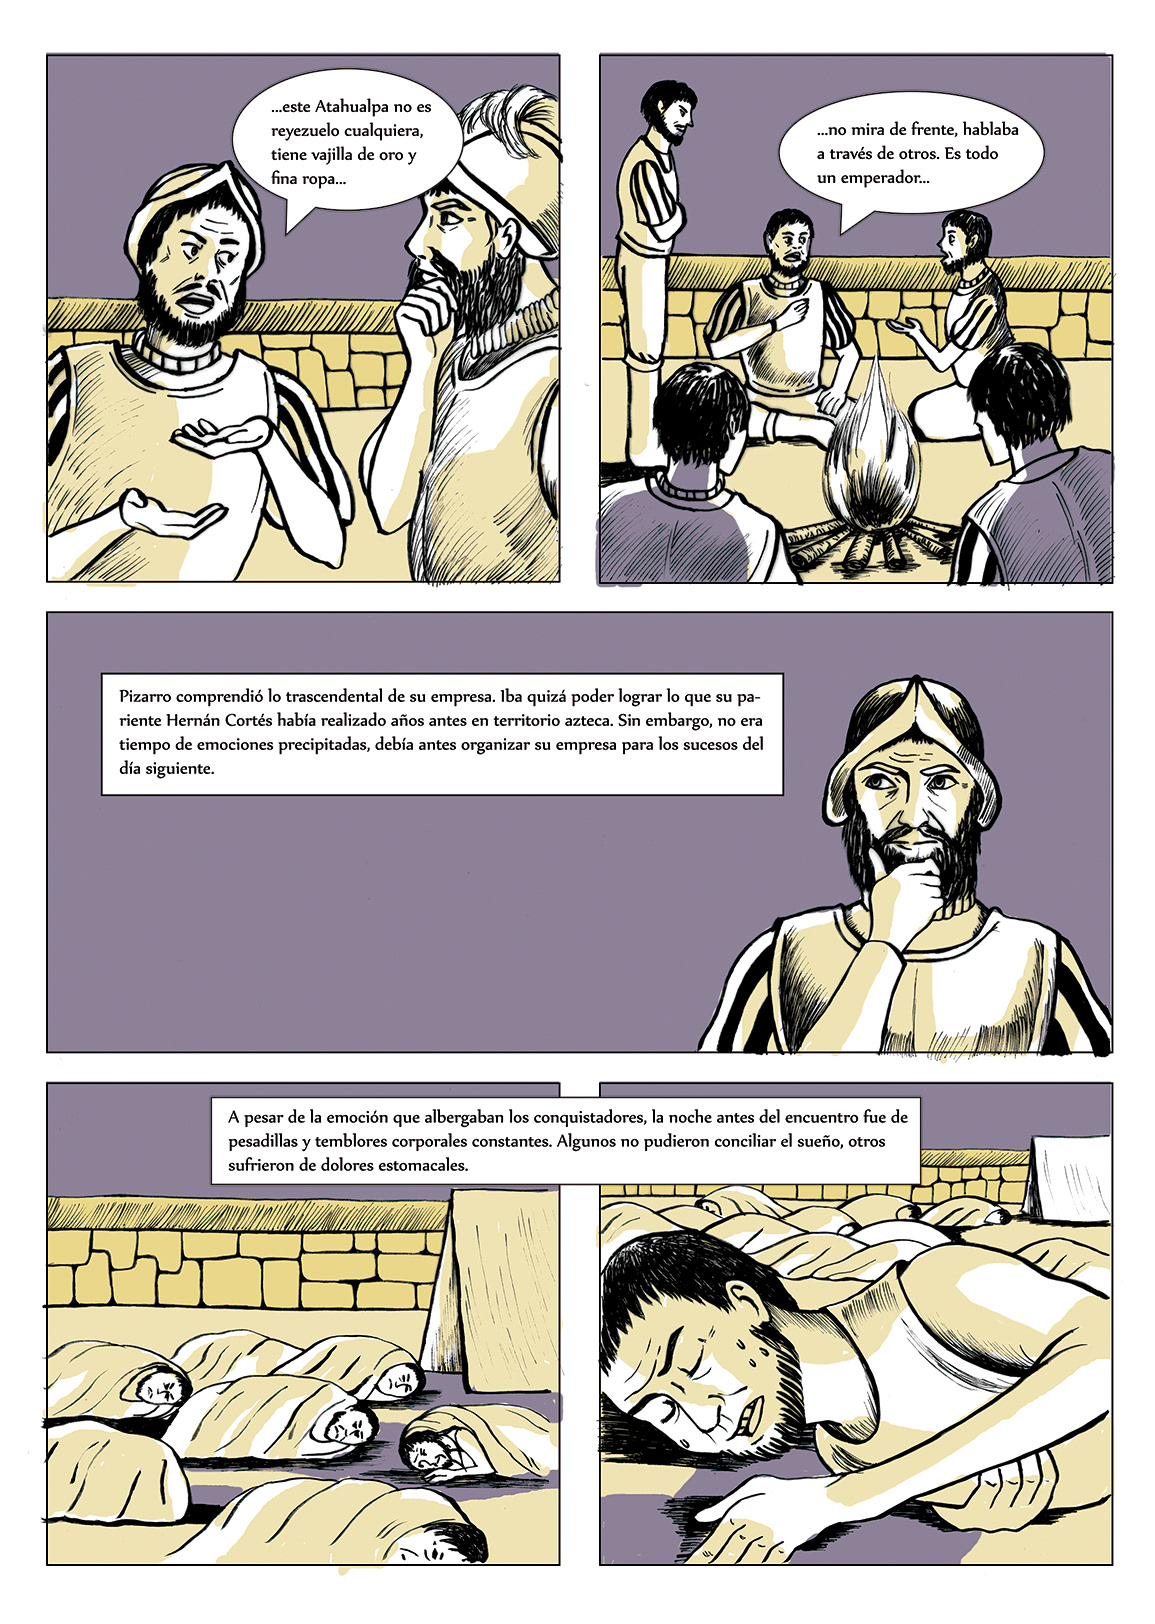 atahualpa comic history peru